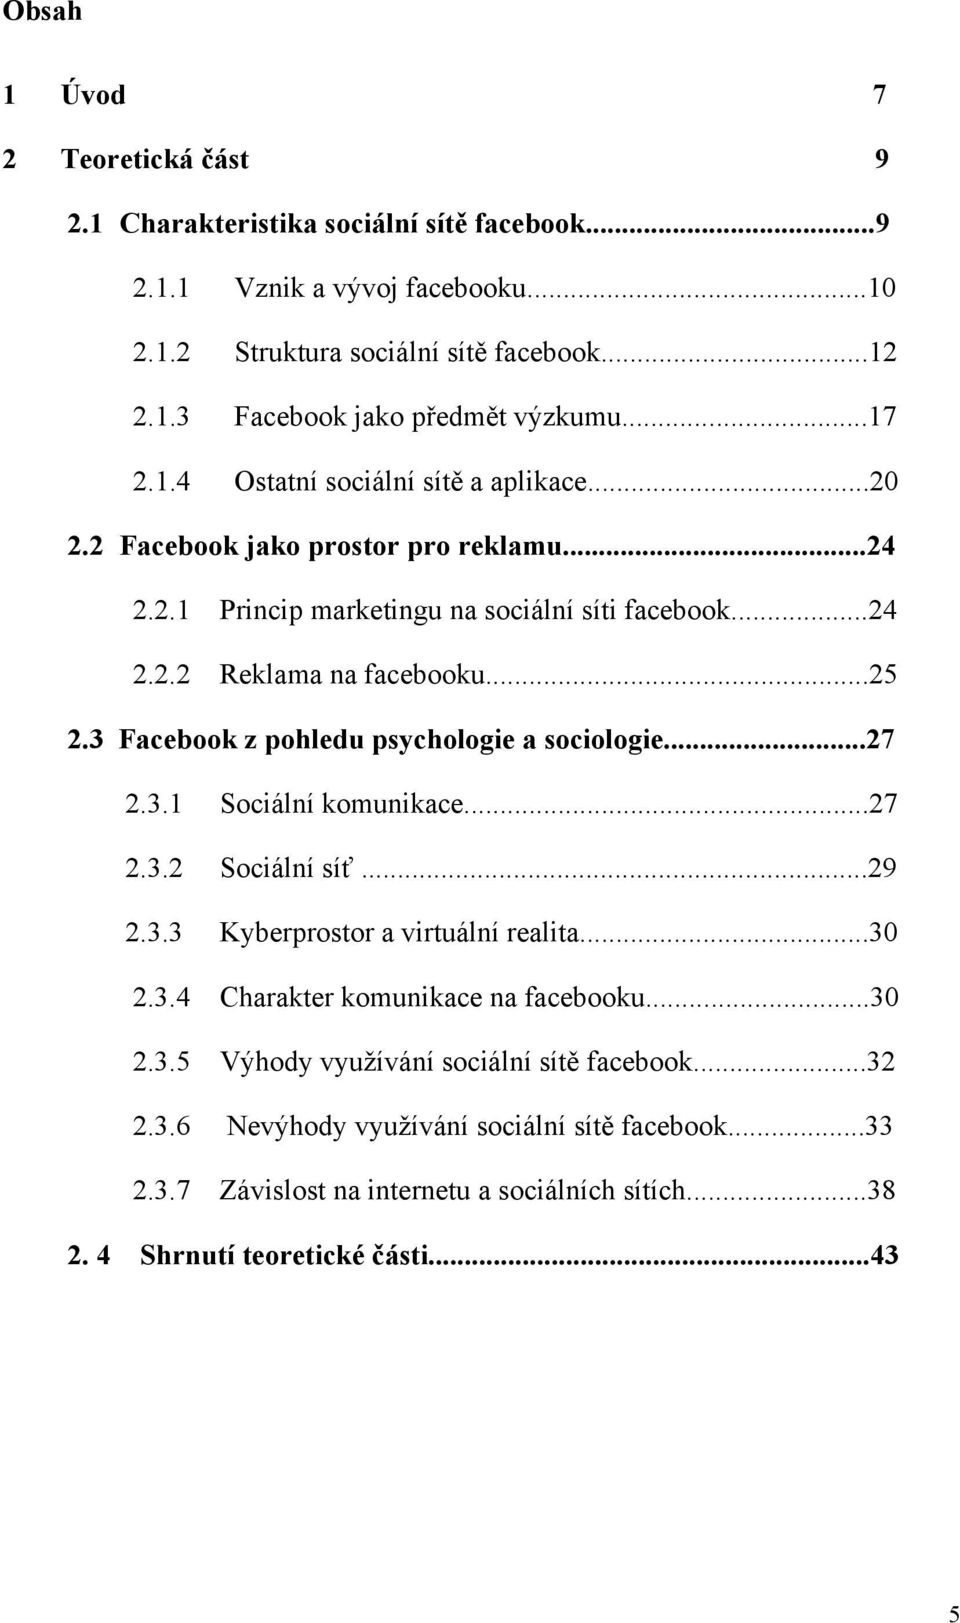 3 Facebook z pohledu psychologie a sociologie...27 2.3.1 Sociální komunikace...27 2.3.2 Sociální síť...29 2.3.3 Kyberprostor a virtuální realita...30 2.3.4 Charakter komunikace na facebooku.